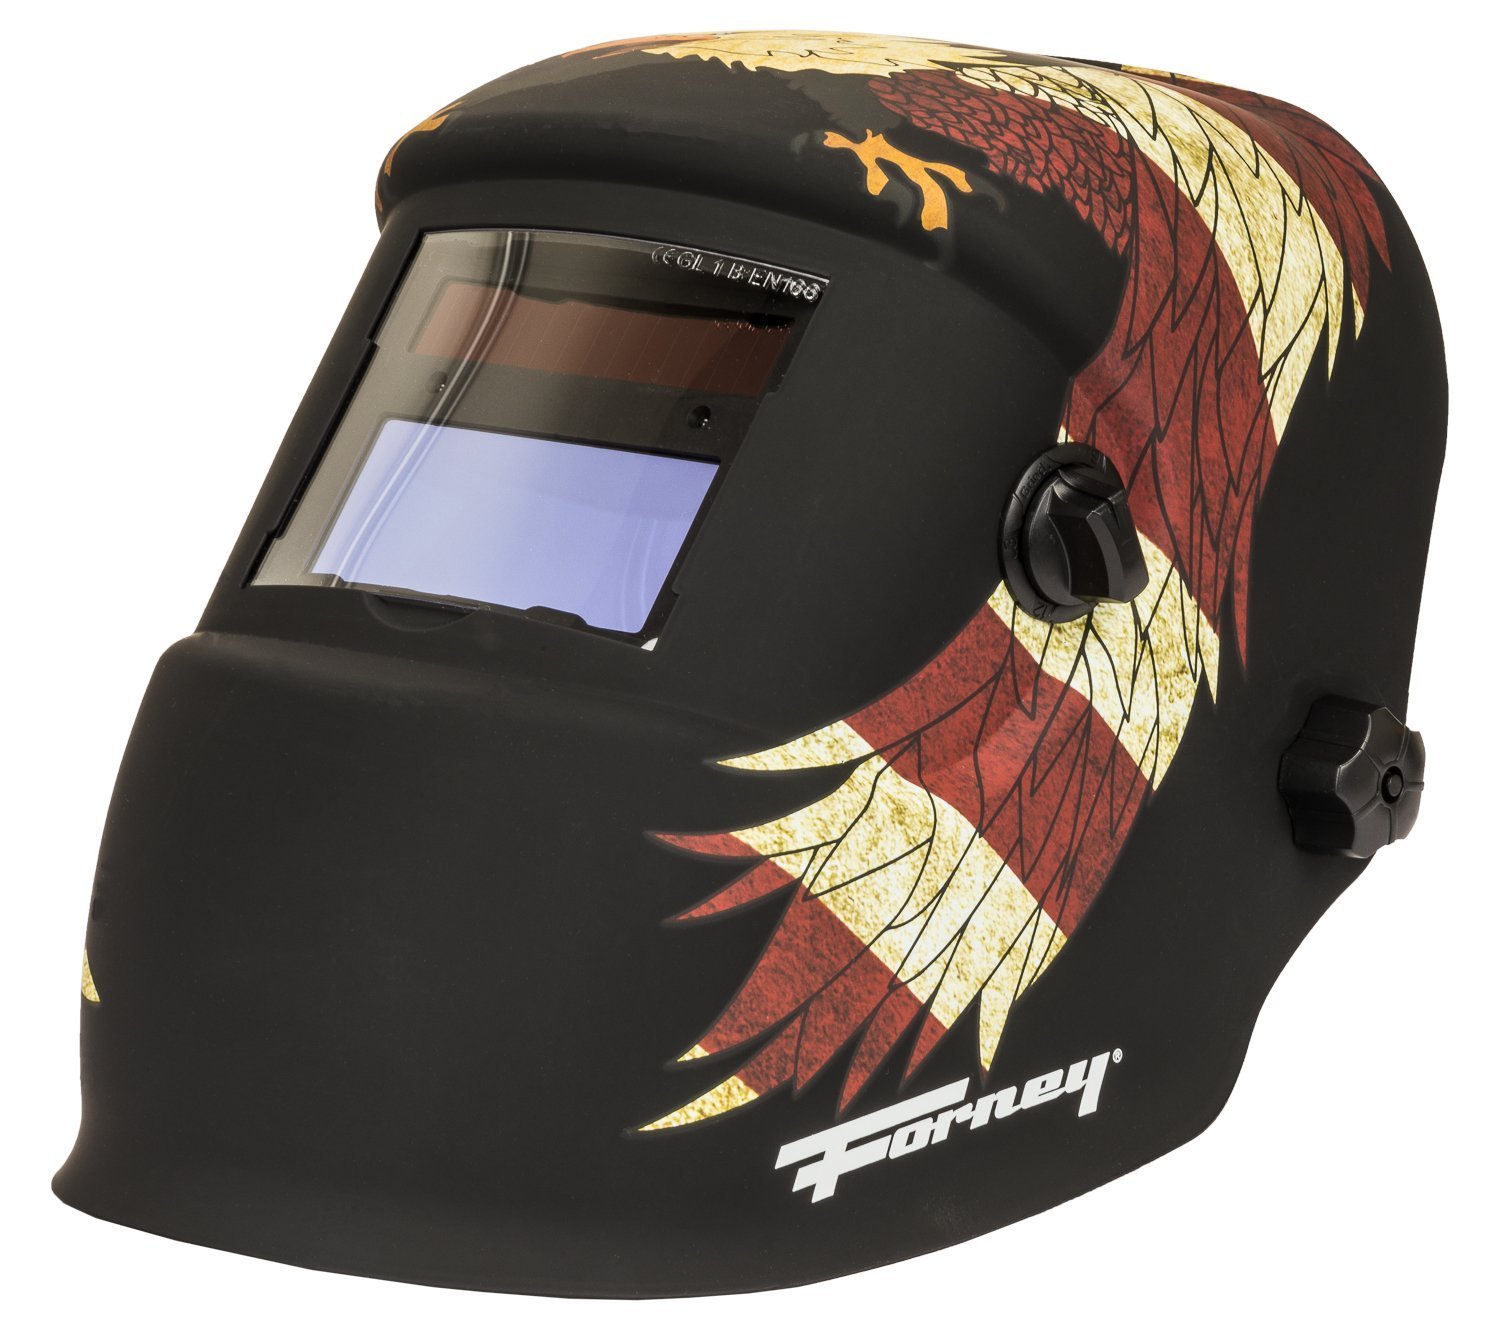 Forney 55704 Premier Series Patriot Auto Darkening Welding Helmet